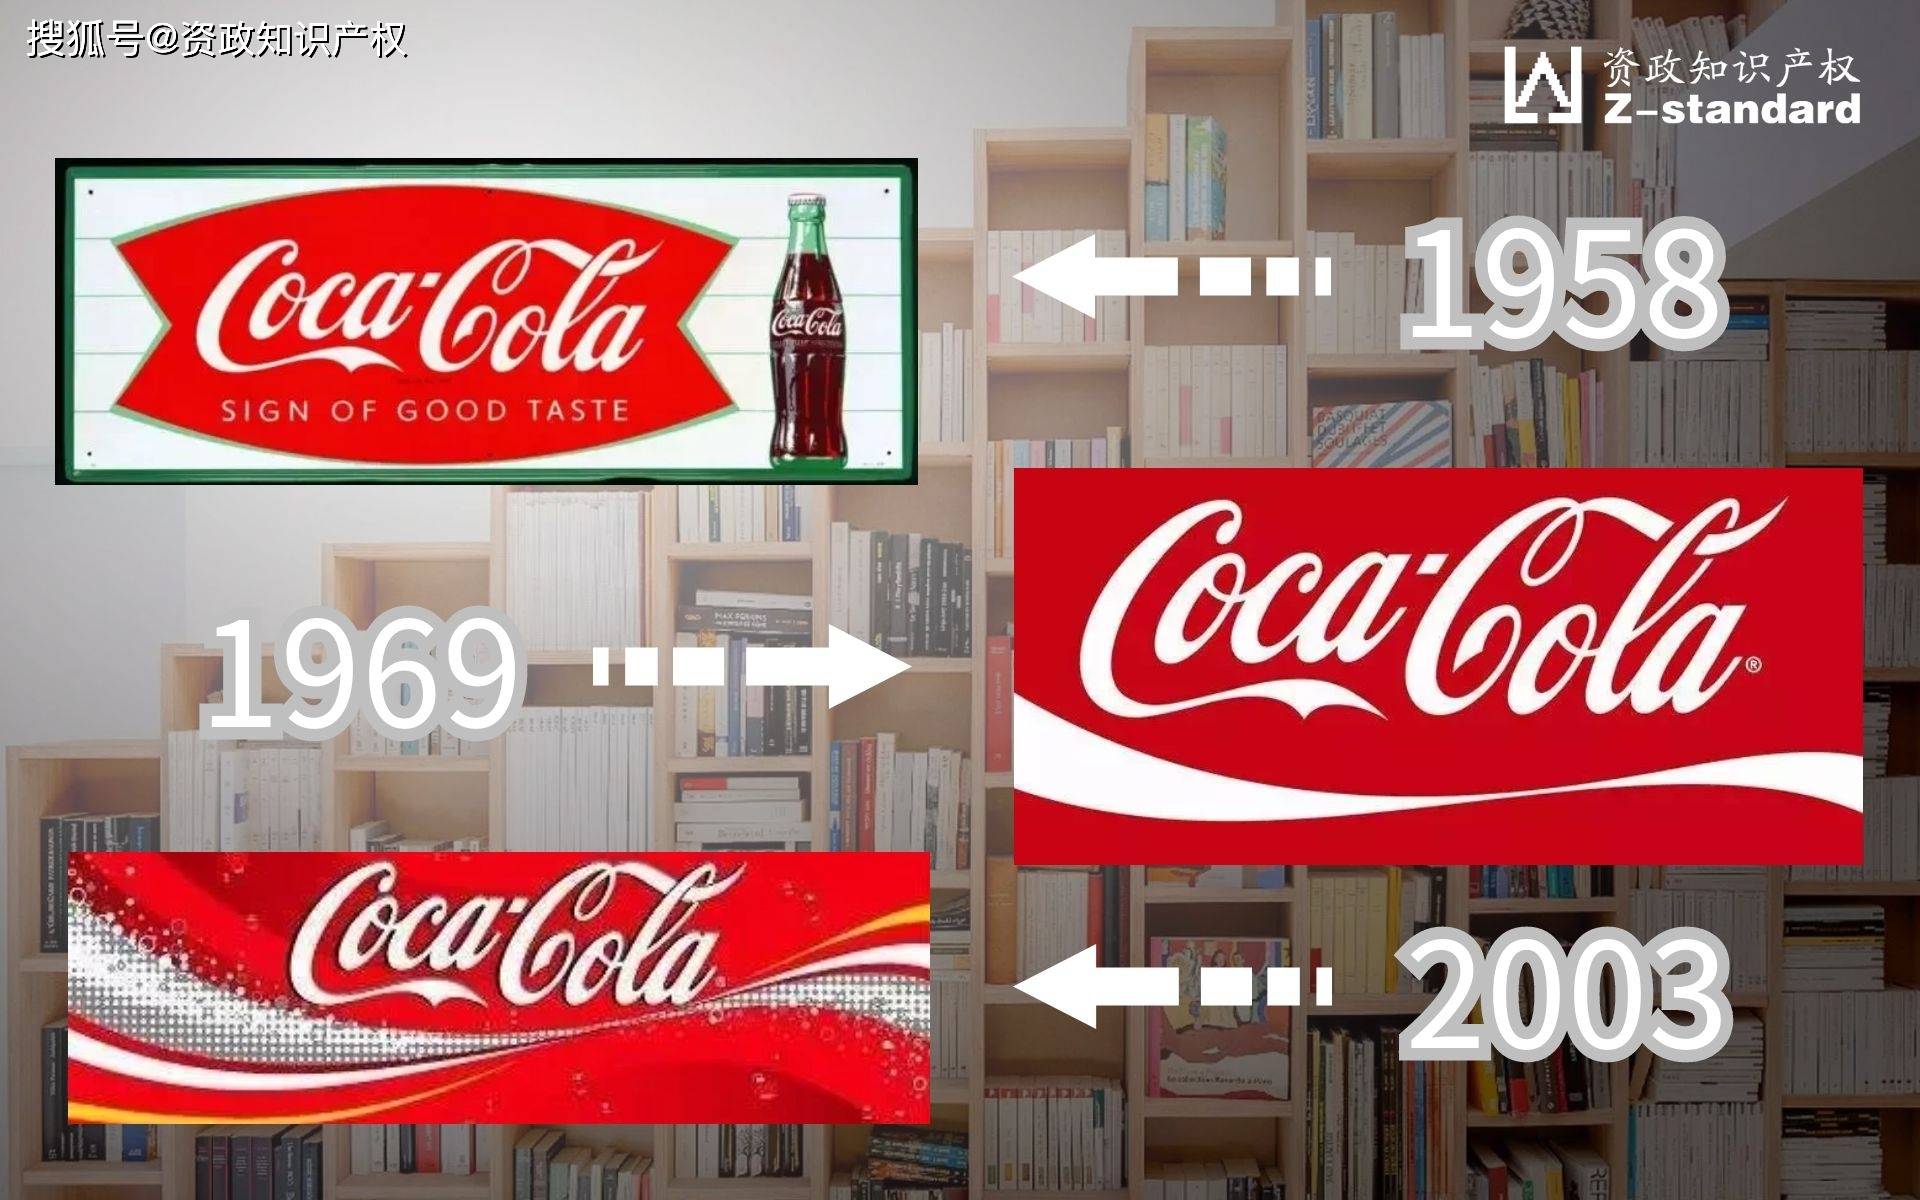 可口可乐logo发展史图片